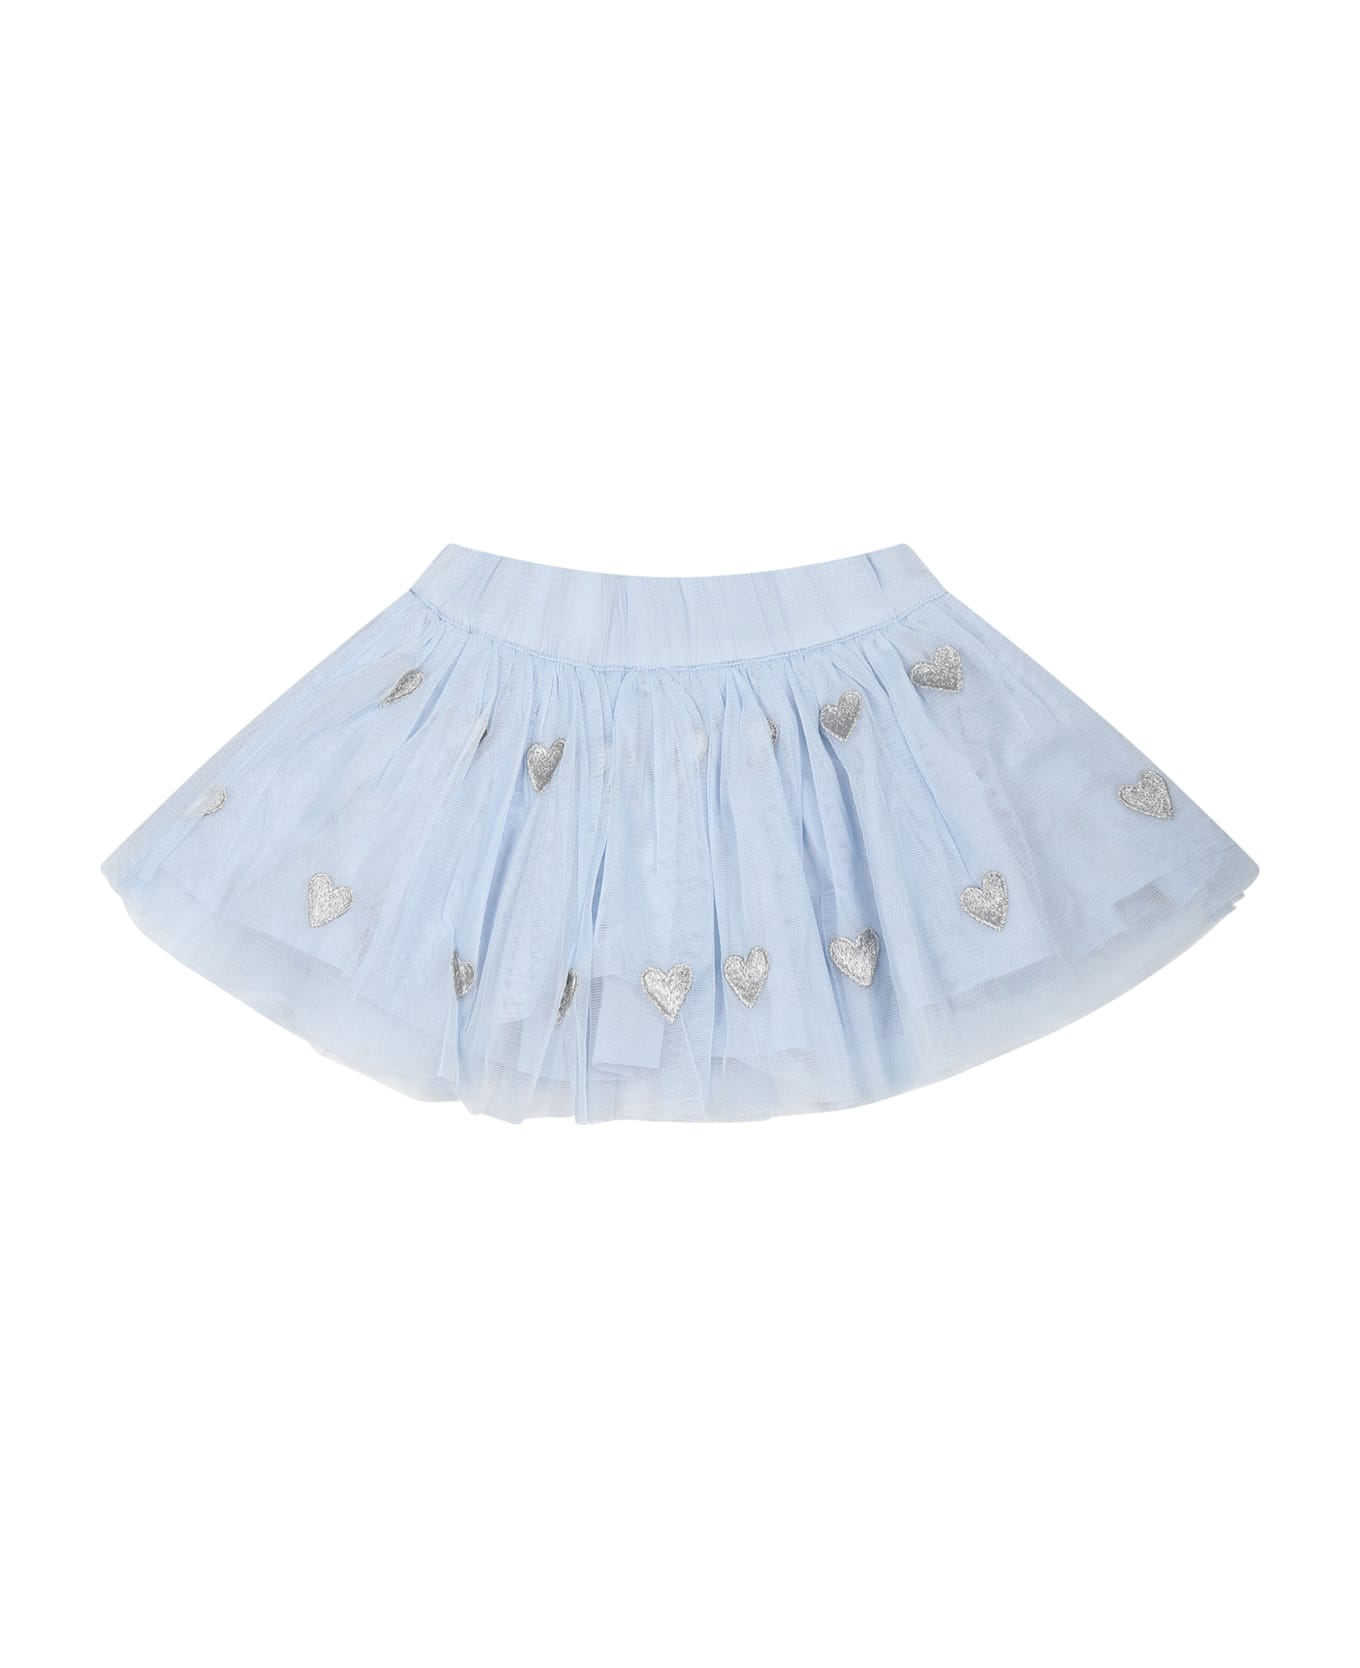 Stella McCartney Kids Light Blue Skirt For Baby Girl With Hearts - Light Blue